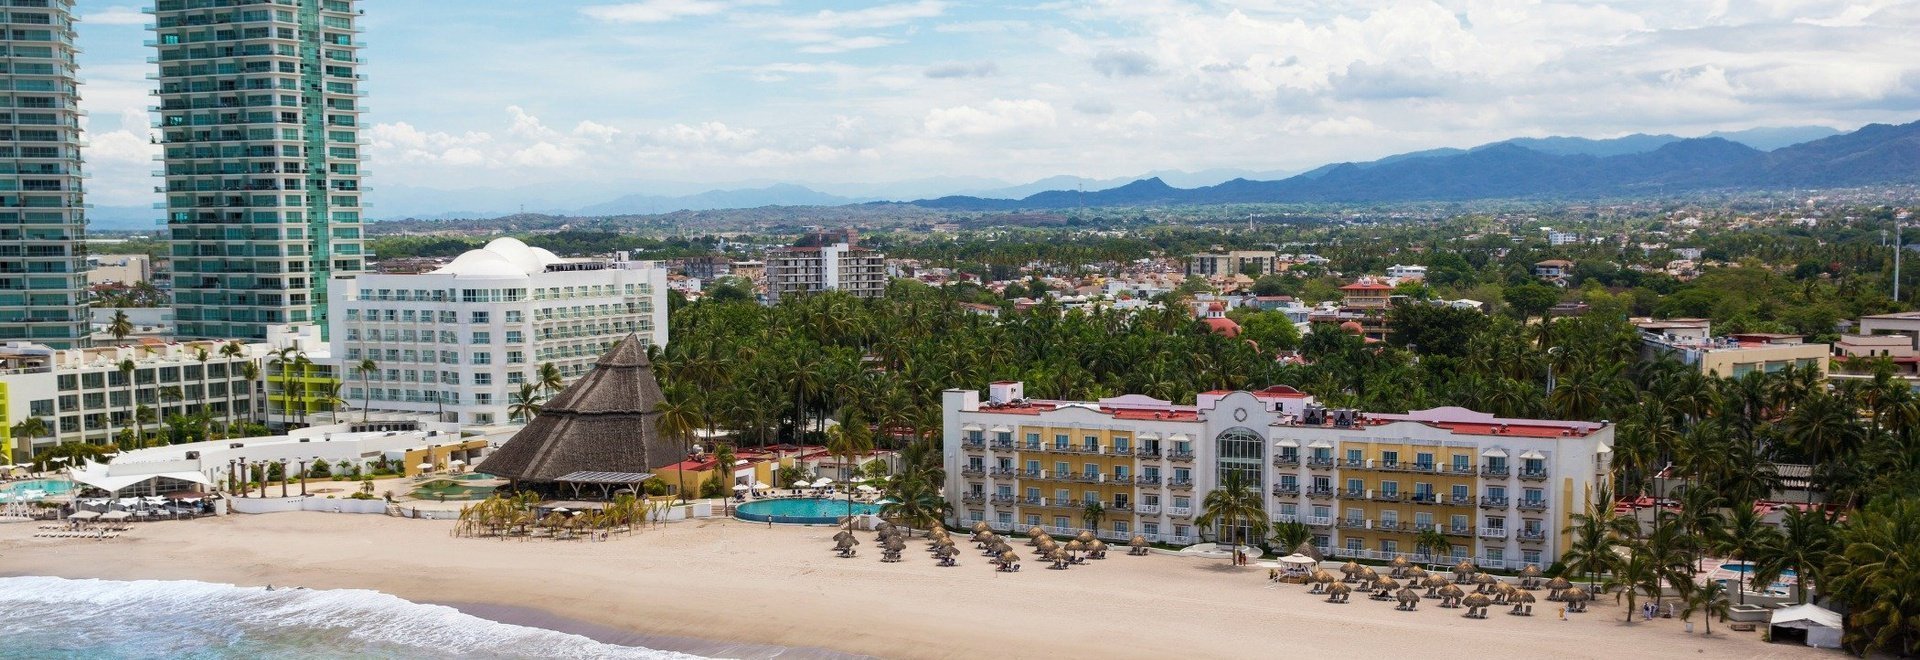 Krystal Puerto Vallarta Hotel - Charming landscapes